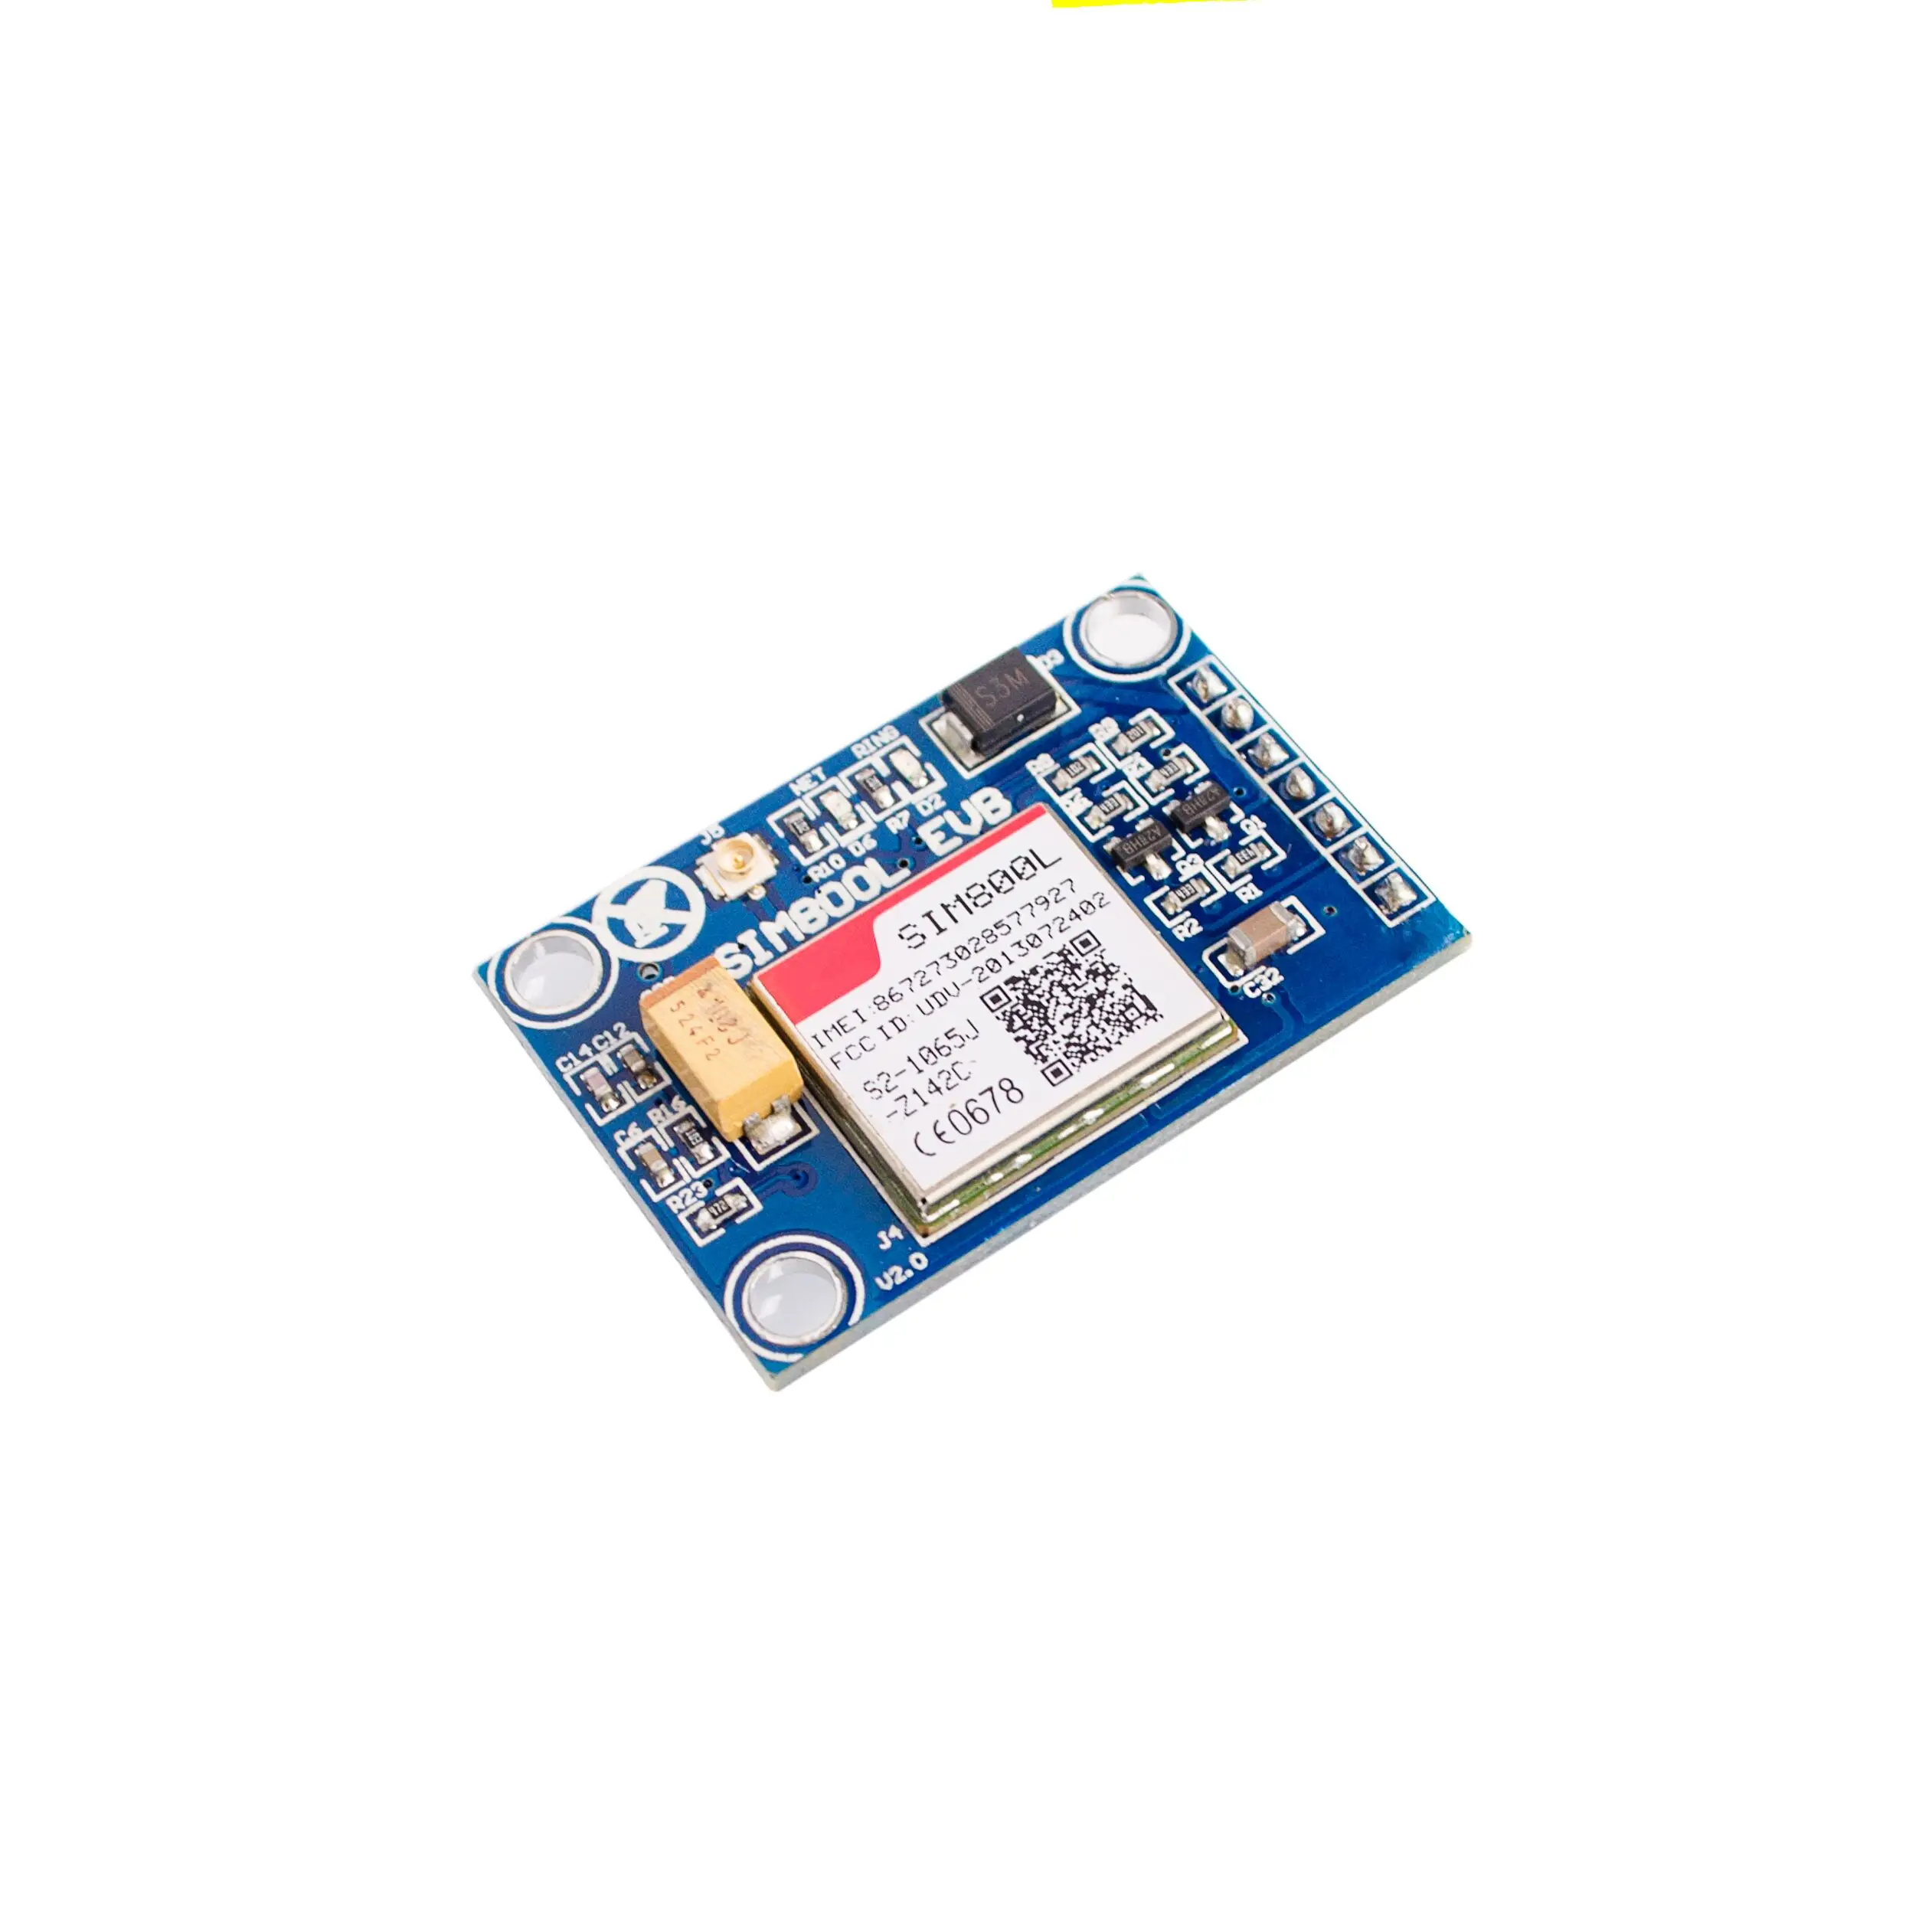 SIM800L GPRS GSM модуль ж/PCB антенна сим-плата четырехдиапазонный микроконтроллер для Arduino